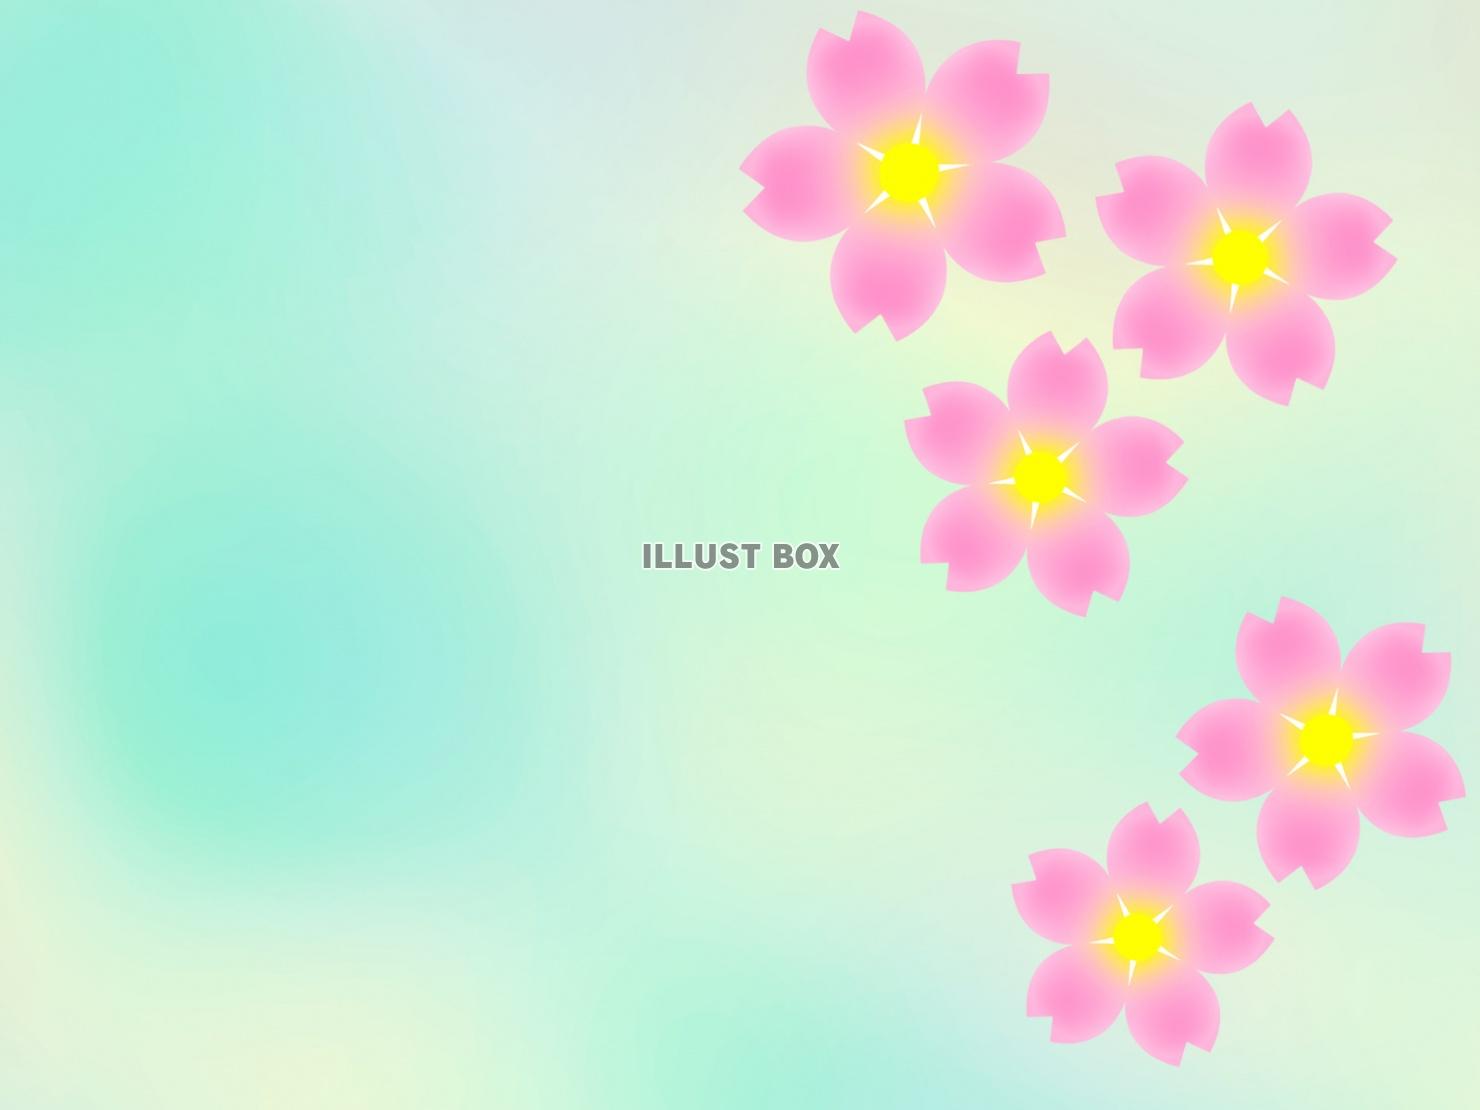 桜の花模様壁紙シンプル背景素材イラスト